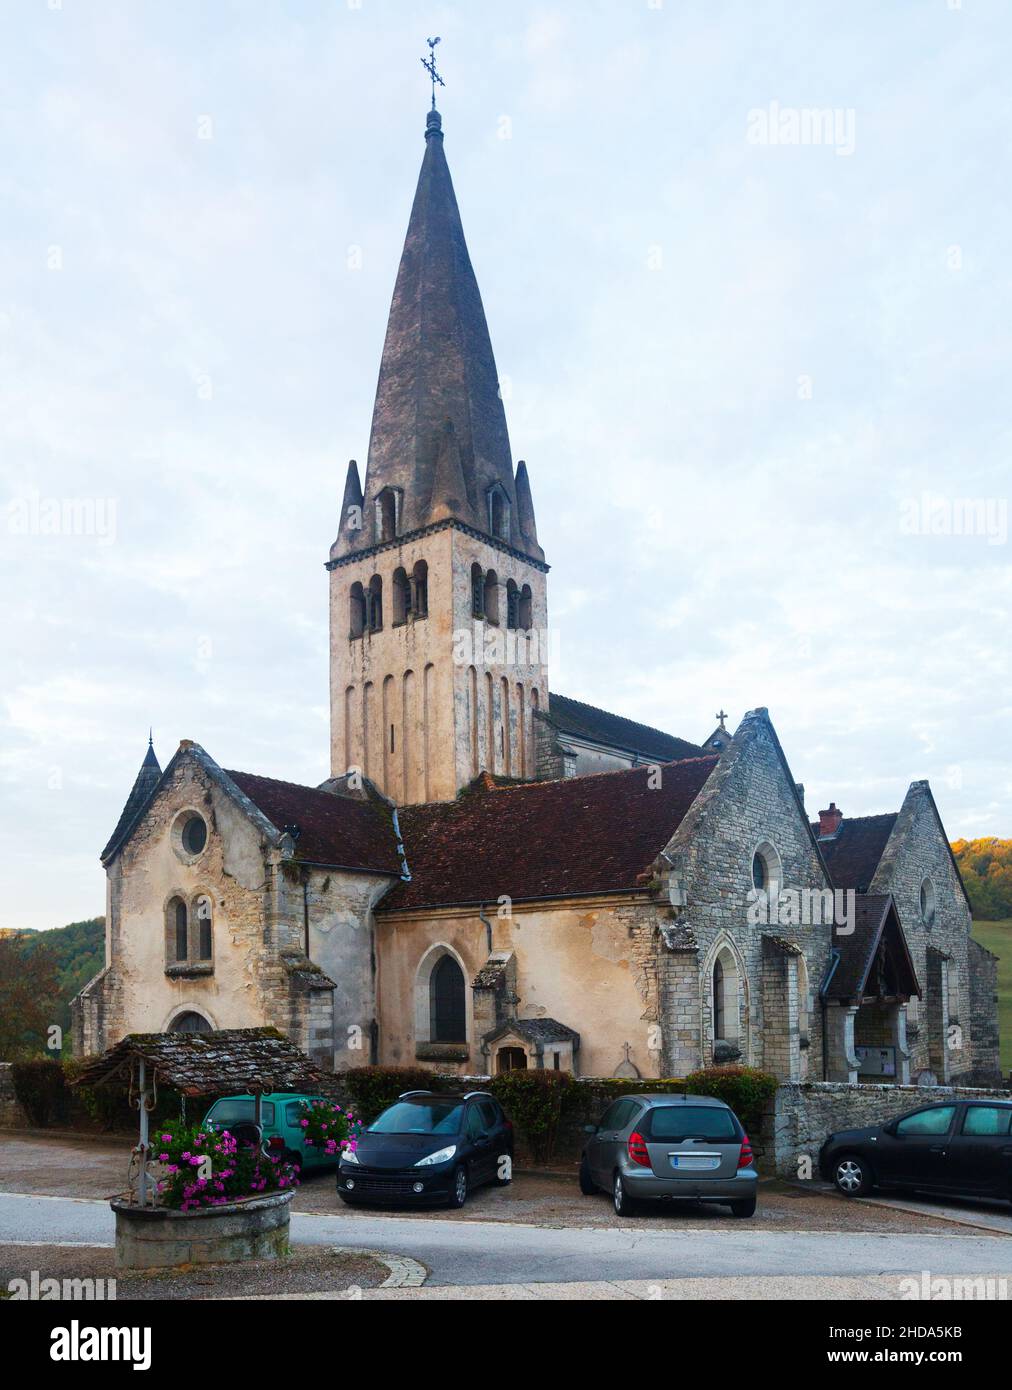 Ancienne église de Bligny-sur-Ouche, France Banque D'Images